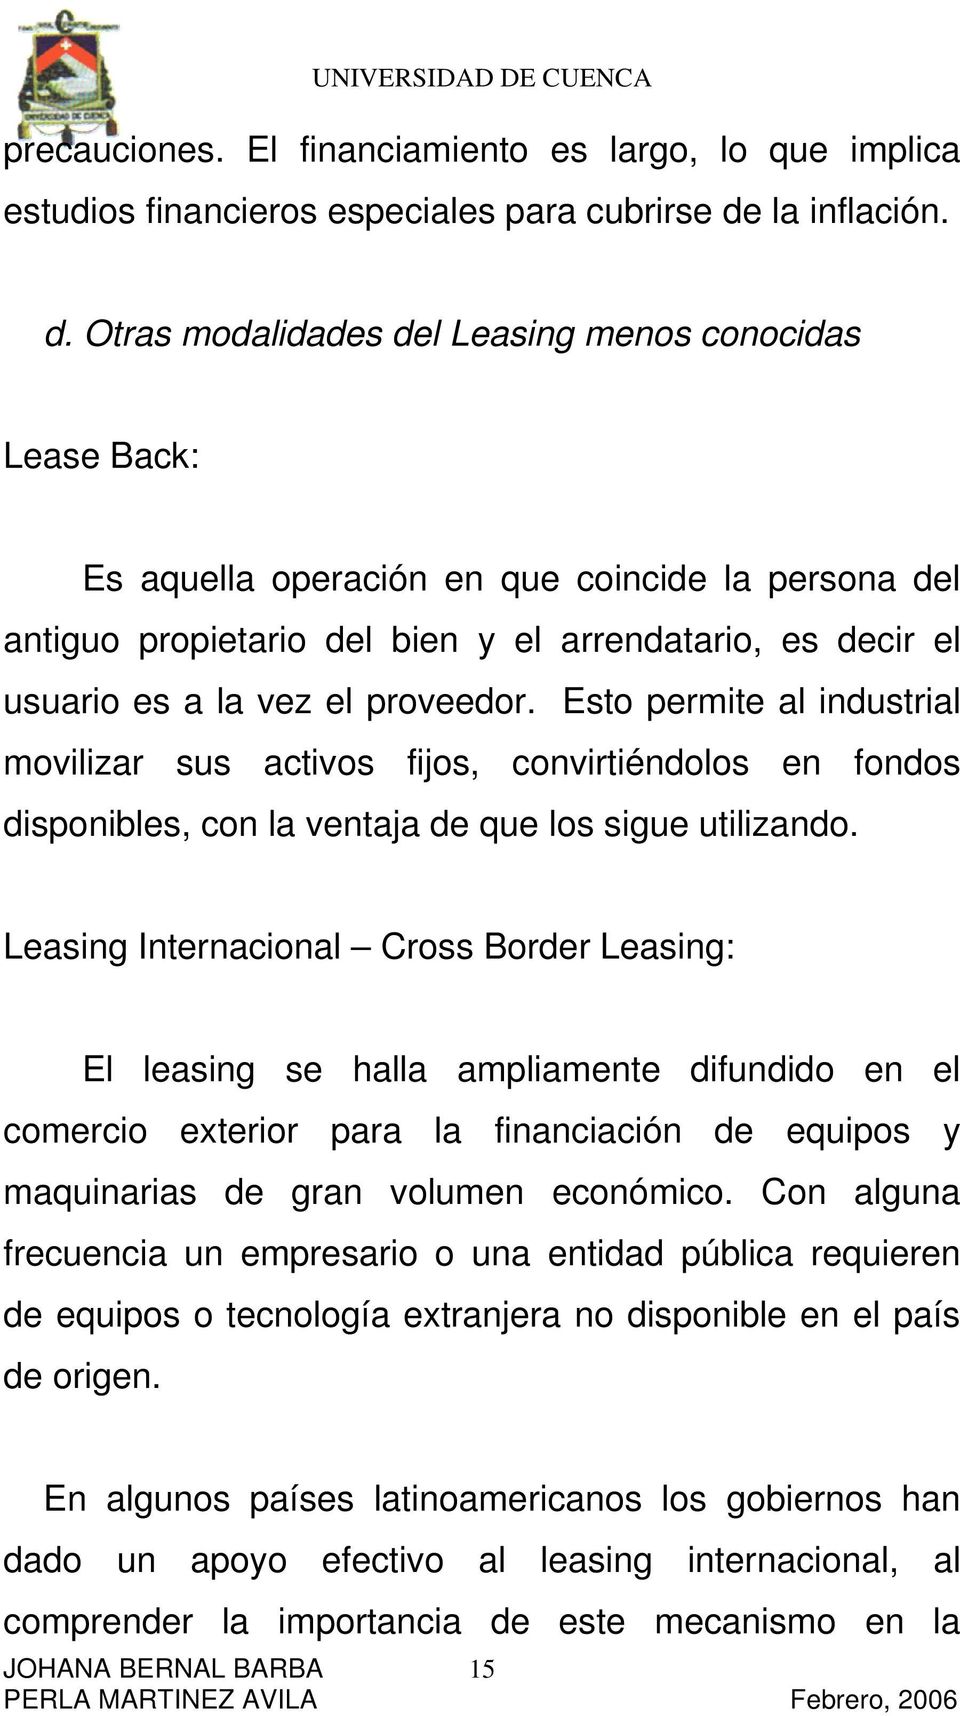 Otras modalidades del Leasing menos conocidas Lease Back: Es aquella operación en que coincide la persona del antiguo propietario del bien y el arrendatario, es decir el usuario es a la vez el